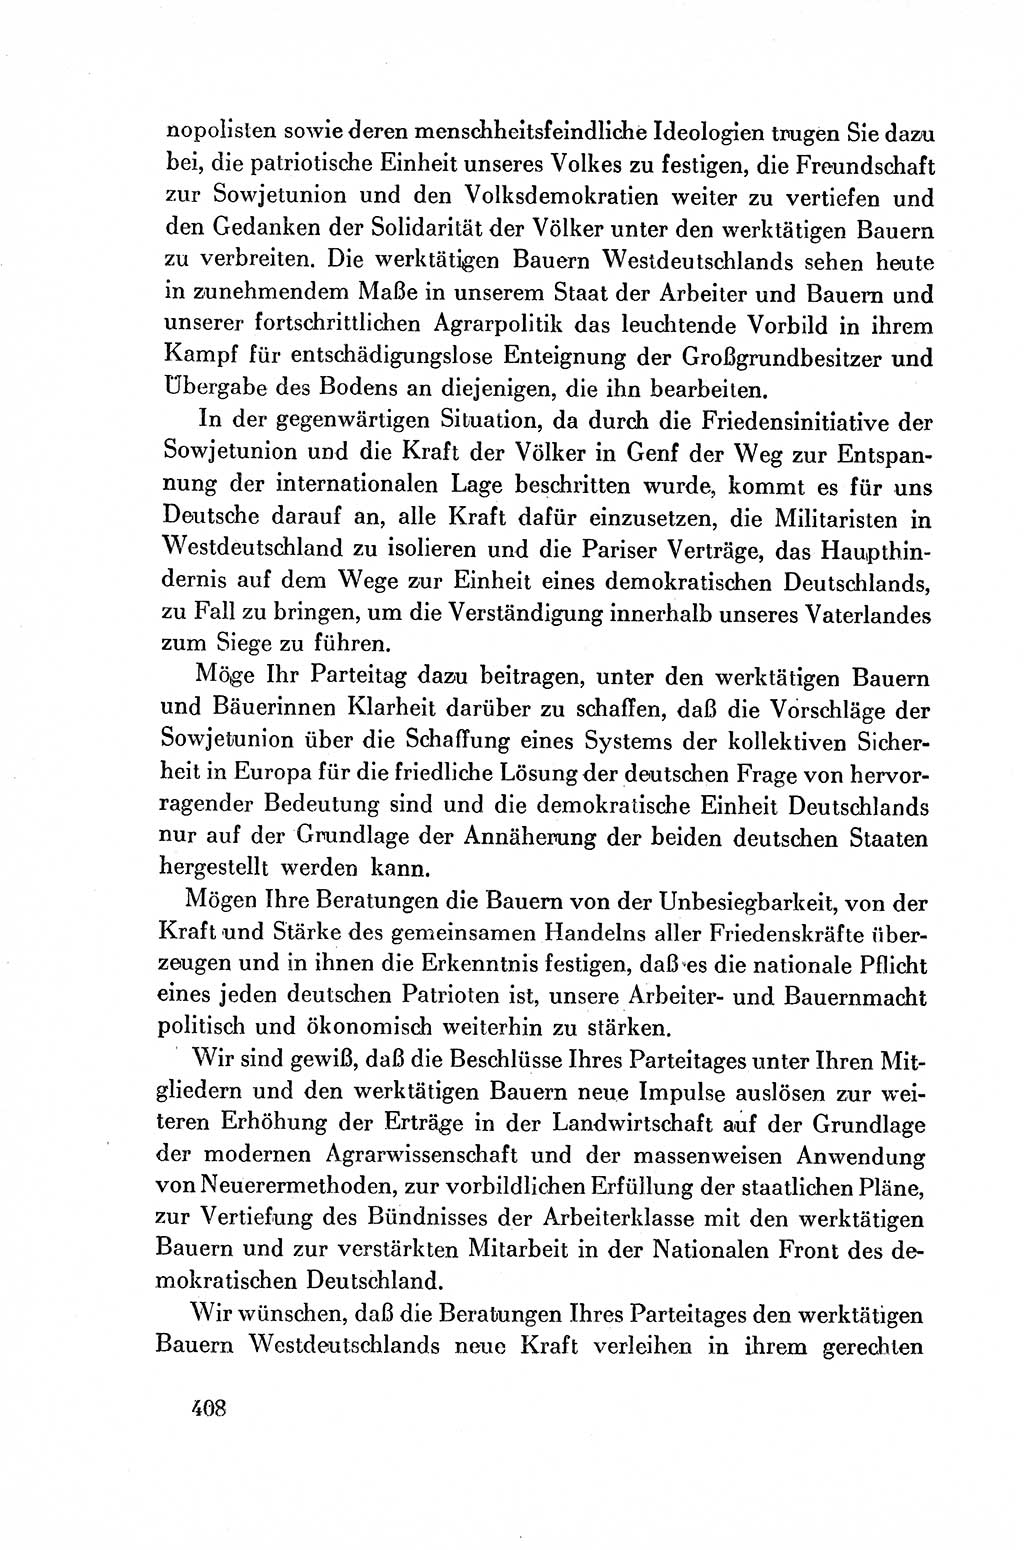 Dokumente der Sozialistischen Einheitspartei Deutschlands (SED) [Deutsche Demokratische Republik (DDR)] 1954-1955, Seite 408 (Dok. SED DDR 1954-1955, S. 408)